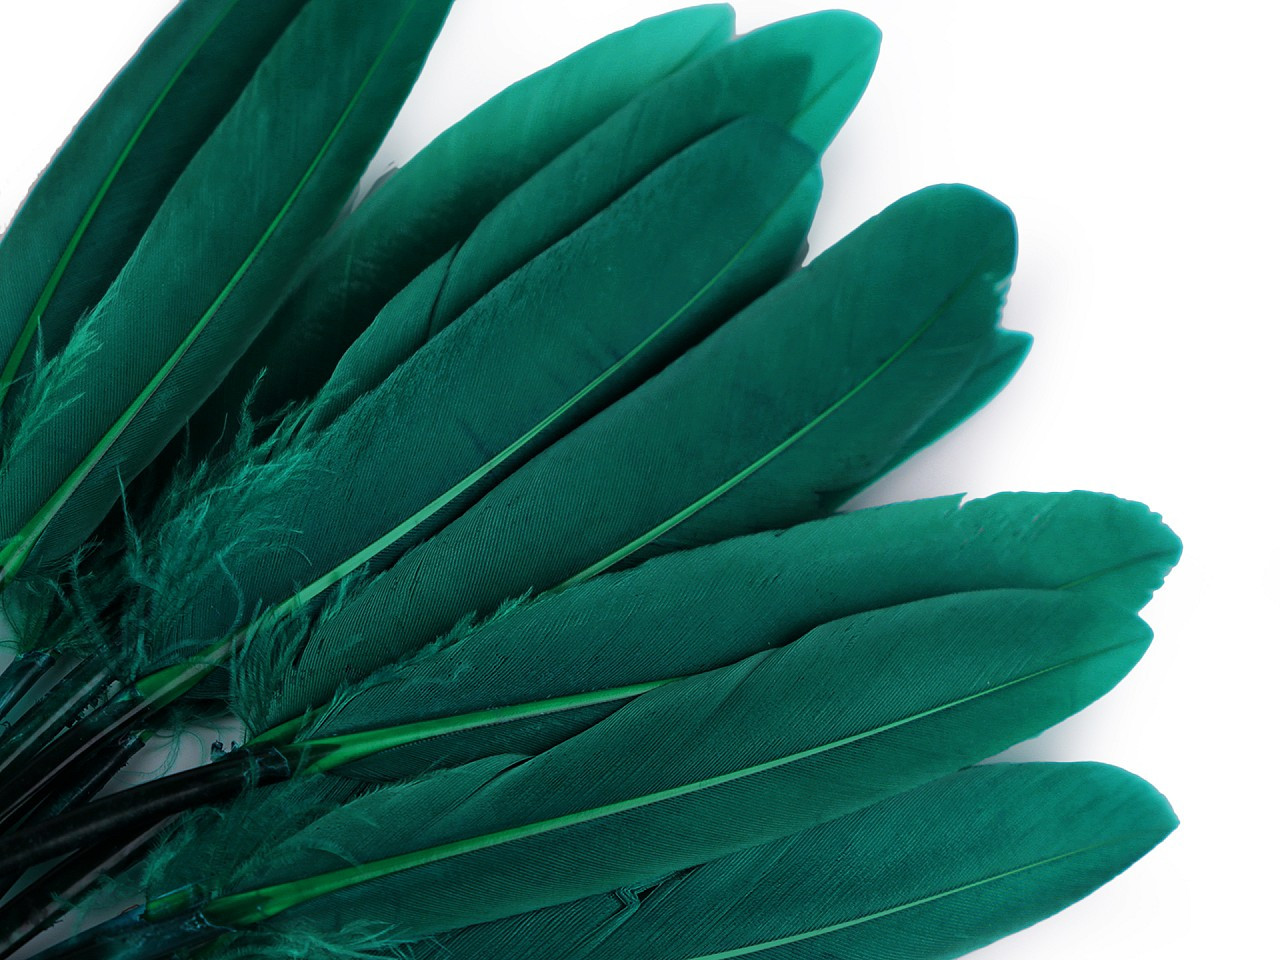 Kachní peří délka 9-14 cm, barva 38 zelená smaragdová tmavá